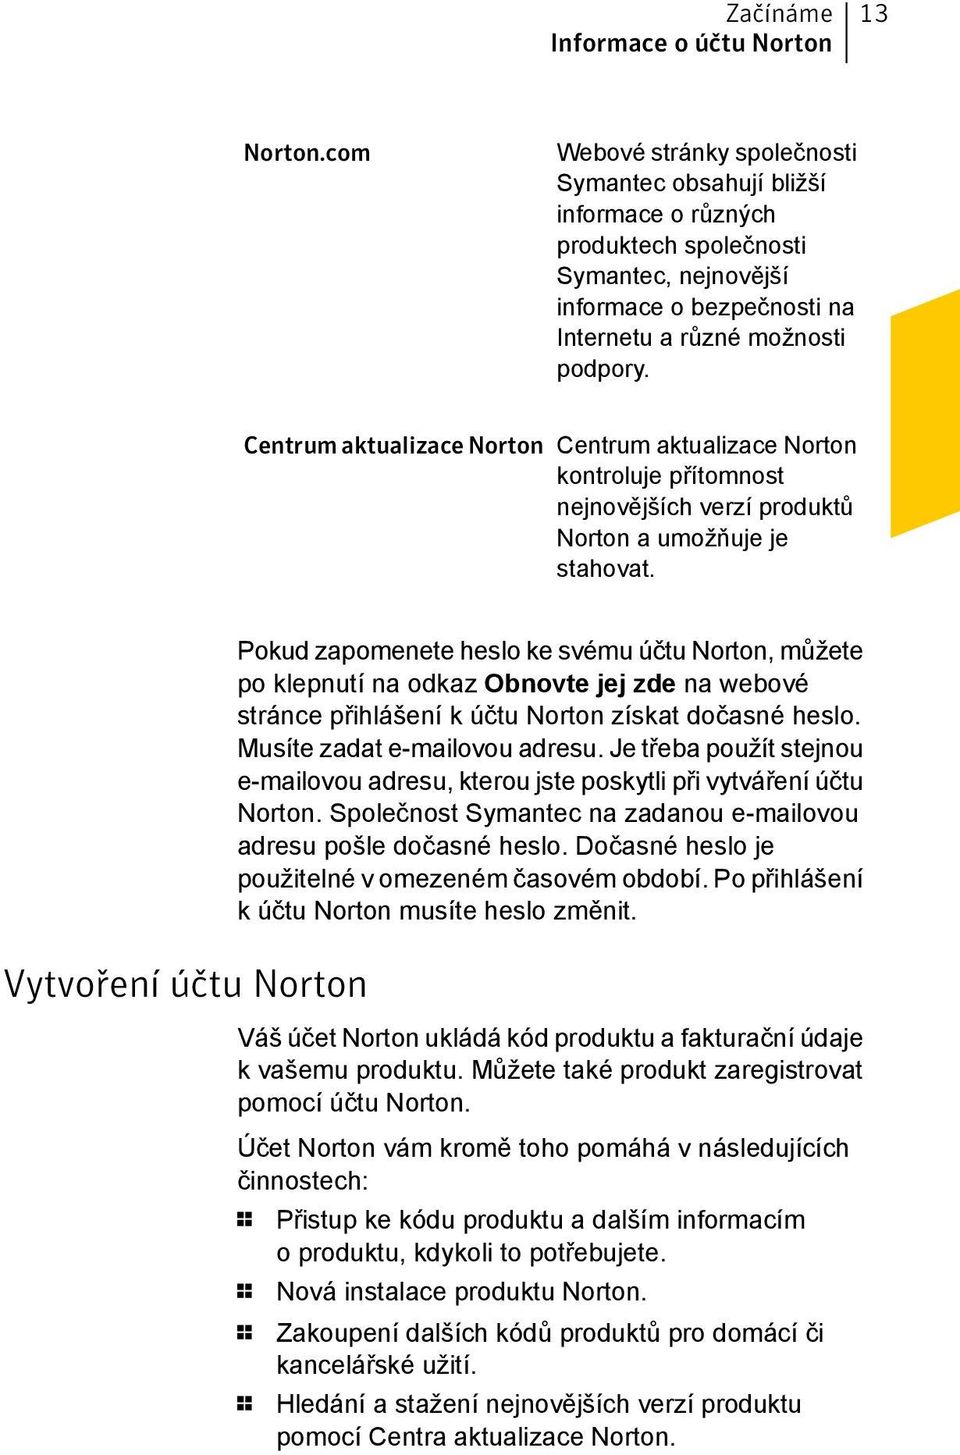 Centrum aktualizace Norton Centrum aktualizace Norton kontroluje přítomnost nejnovějších verzí produktů Norton a umožňuje je stahovat.